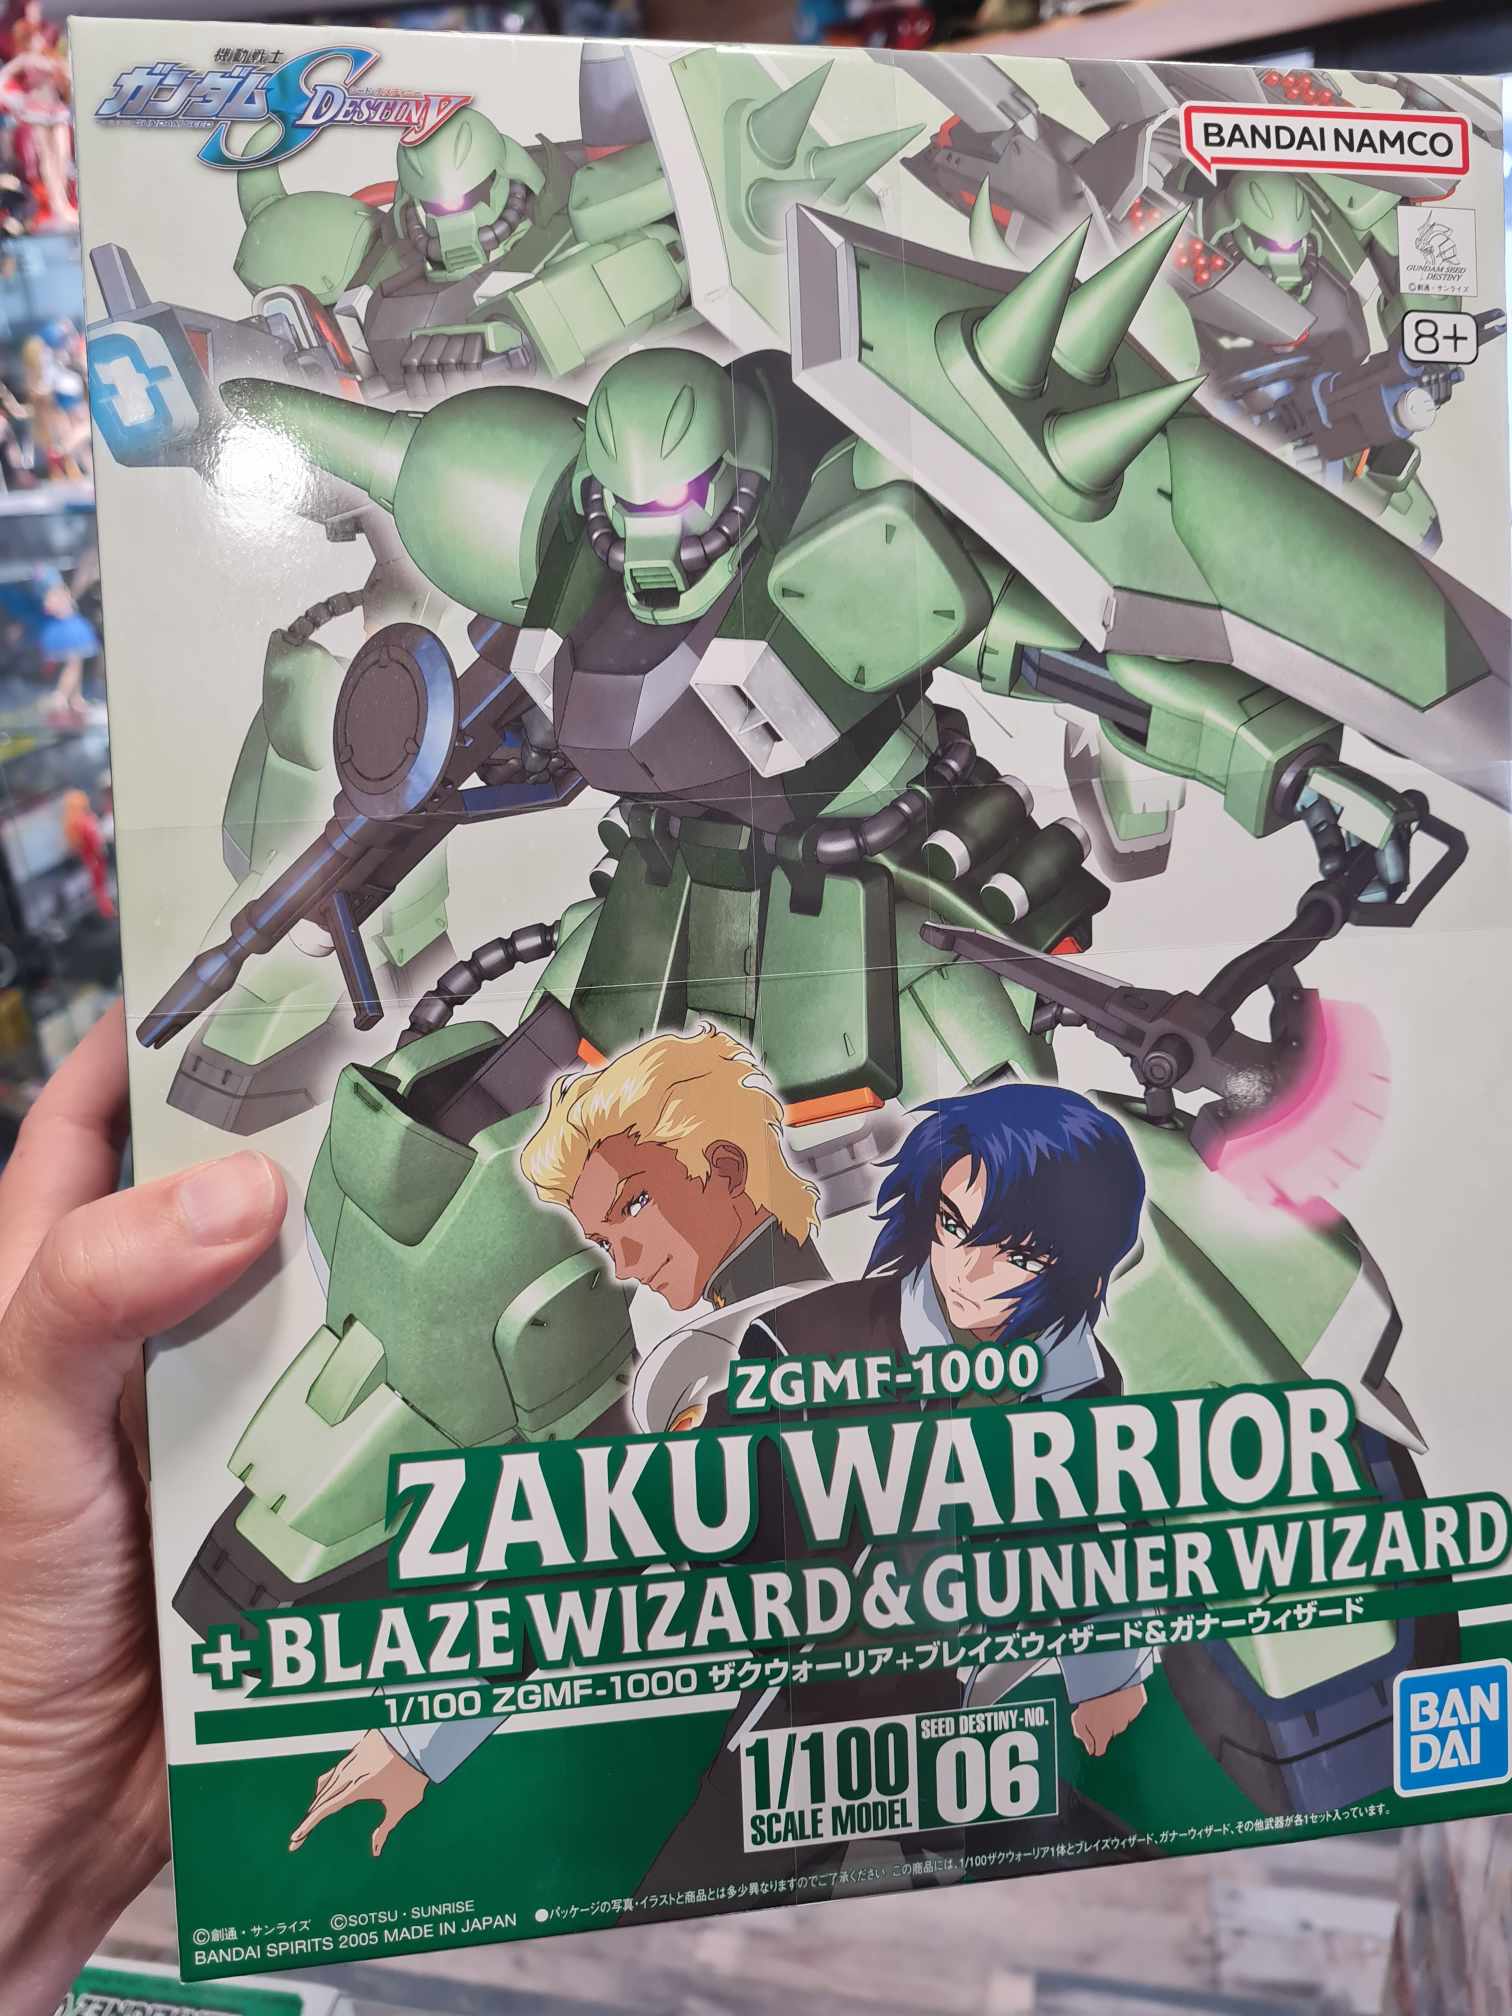 RE 1/100 Zaku Warrior + Blaze Wizard